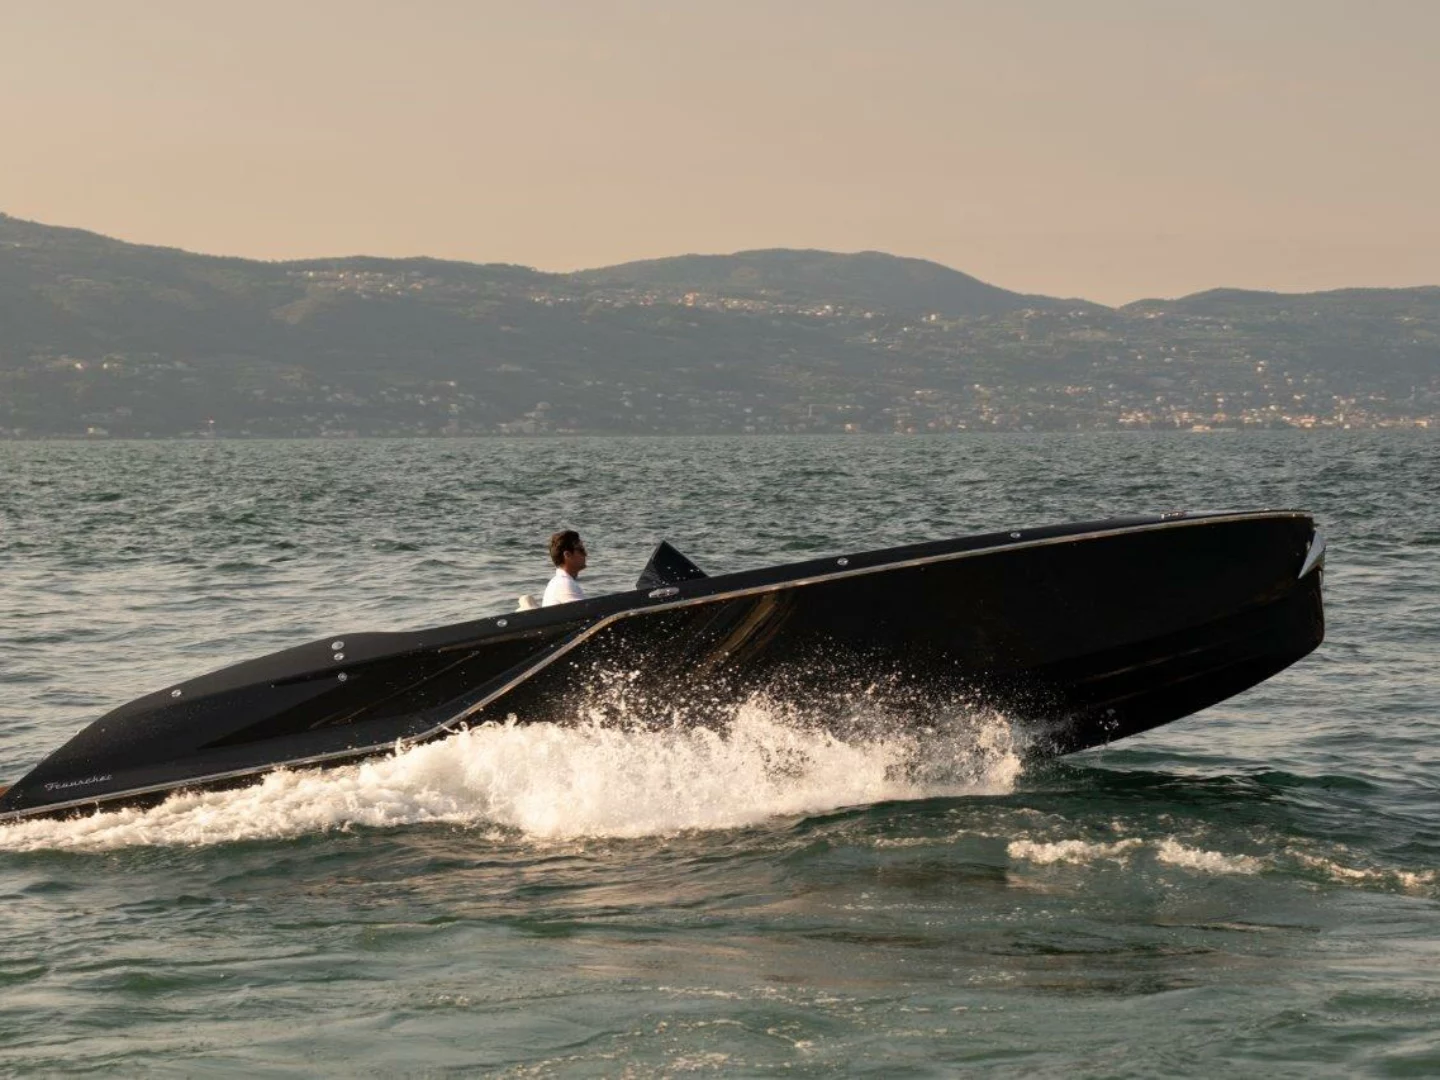 Frauscher Italia, con Officina Lupo, presenta il Fantom Air al Boat Show del Lago Maggiore, un'elegante day cruiser per appassionati di nautica